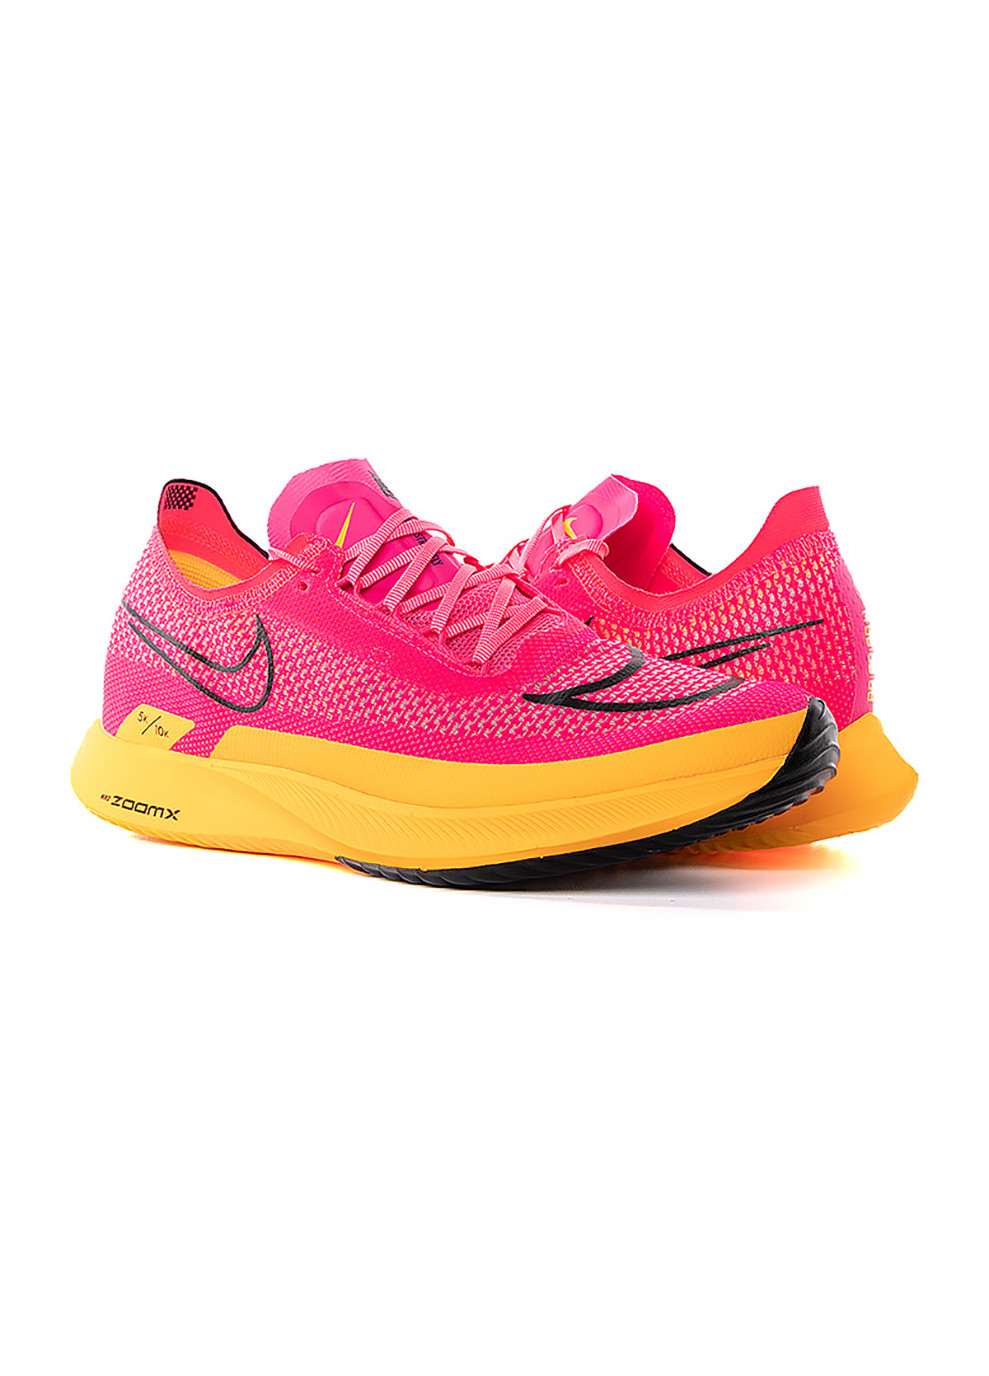 Розовые демисезонные мужские кроссовки zoomx streakfly розовый Nike